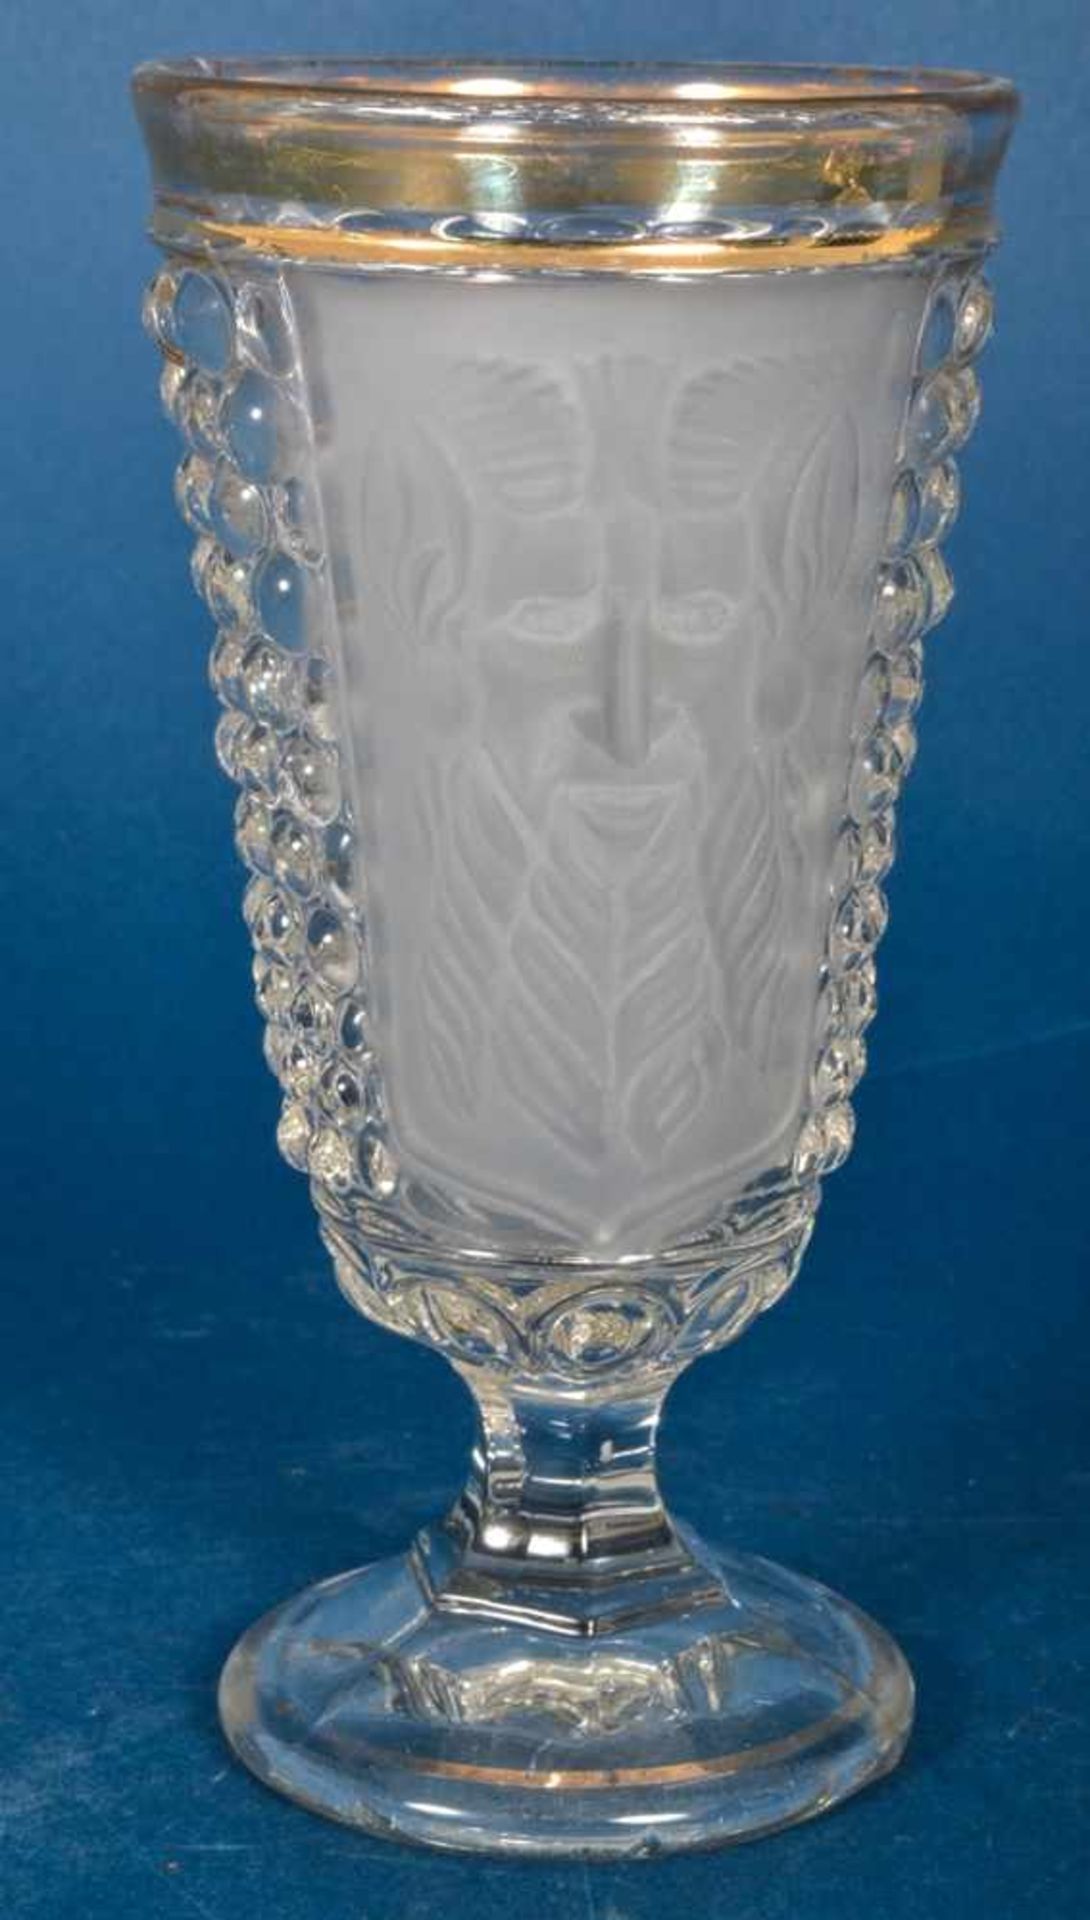 Folge von 4 Dionysos - Weingläsern, Pressglas um 1900, Höhe je ca. 17 cm. Goldränder etwas berieben, - Bild 4 aus 6